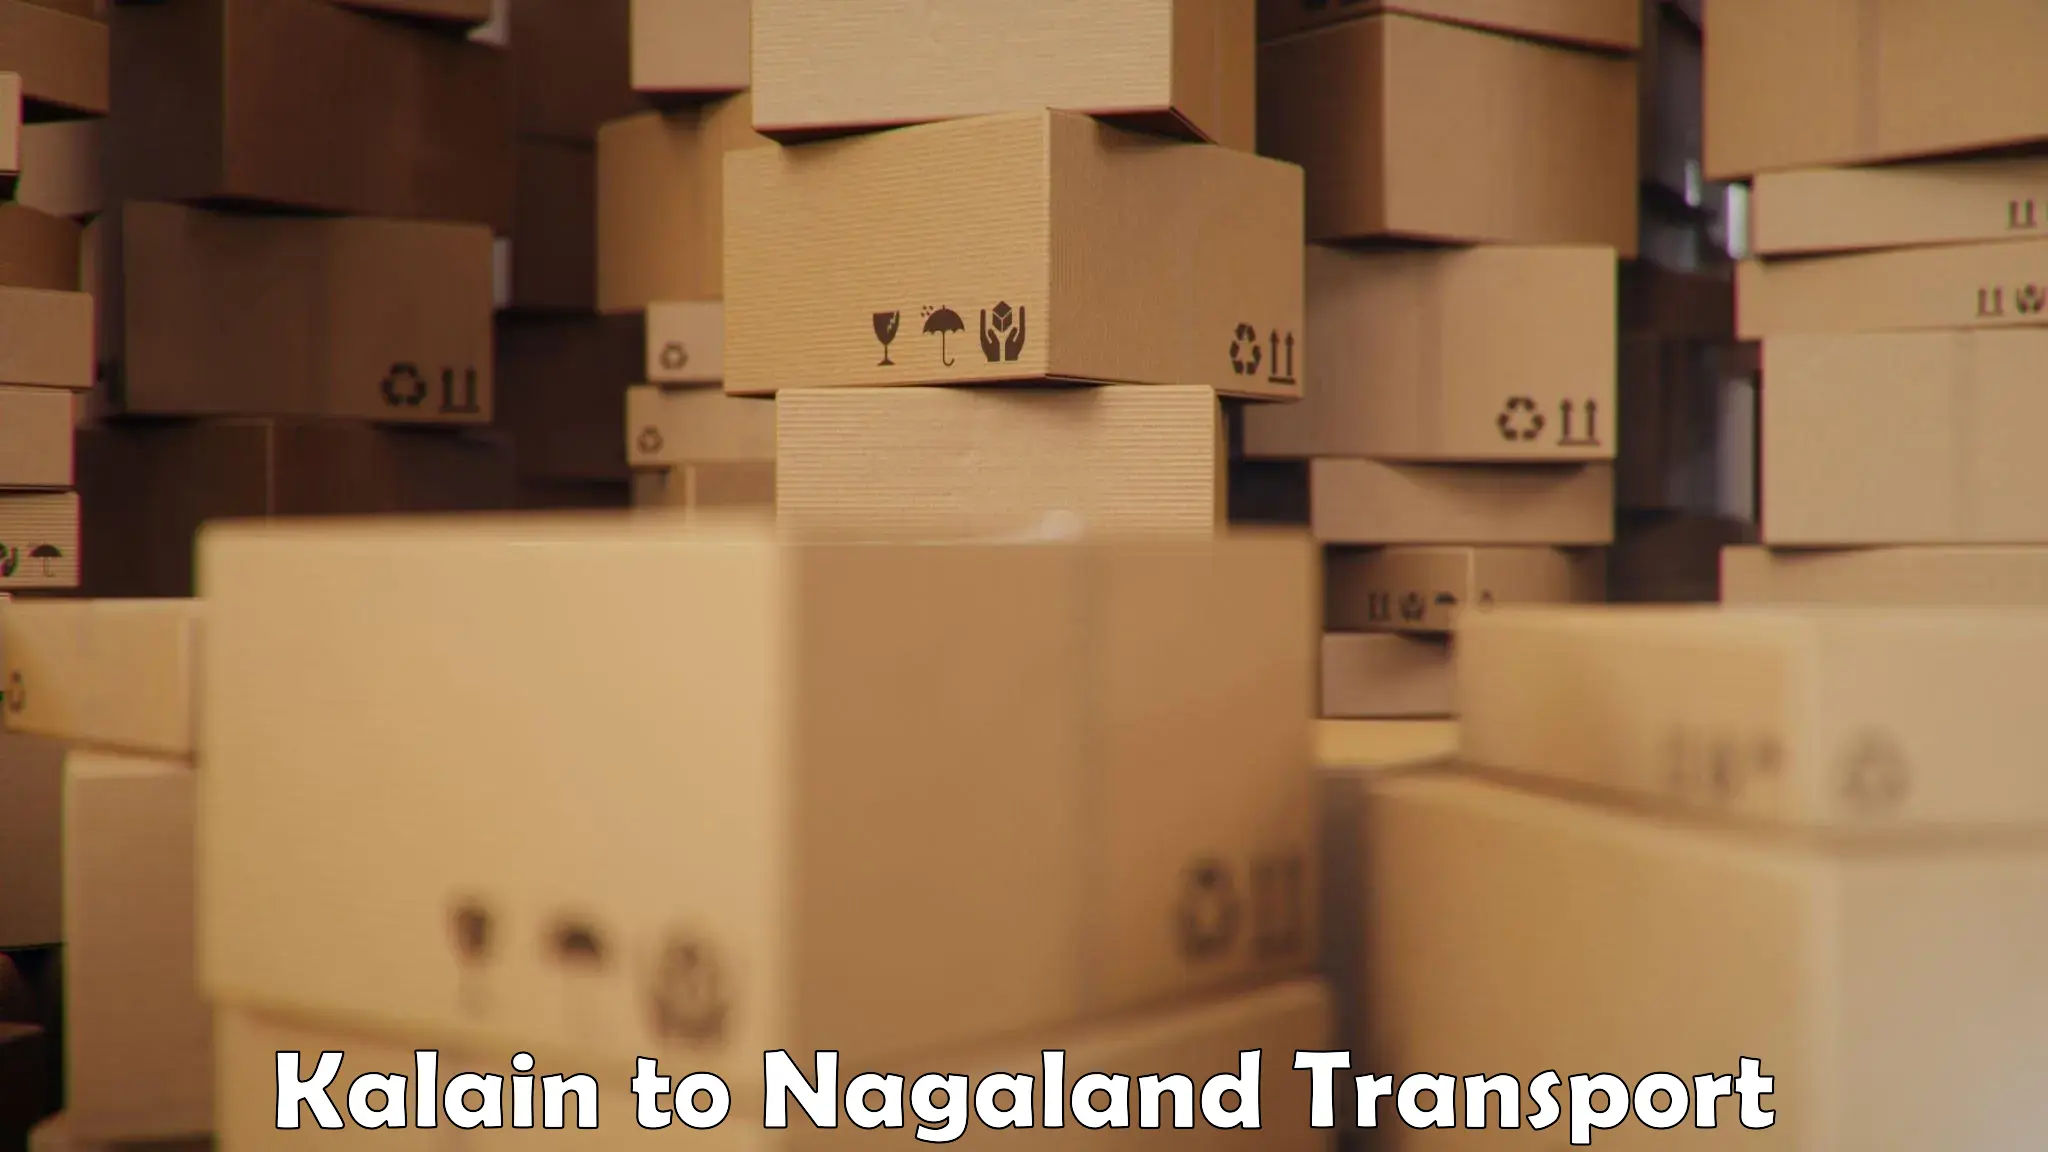 Lorry transport service Kalain to NIT Nagaland